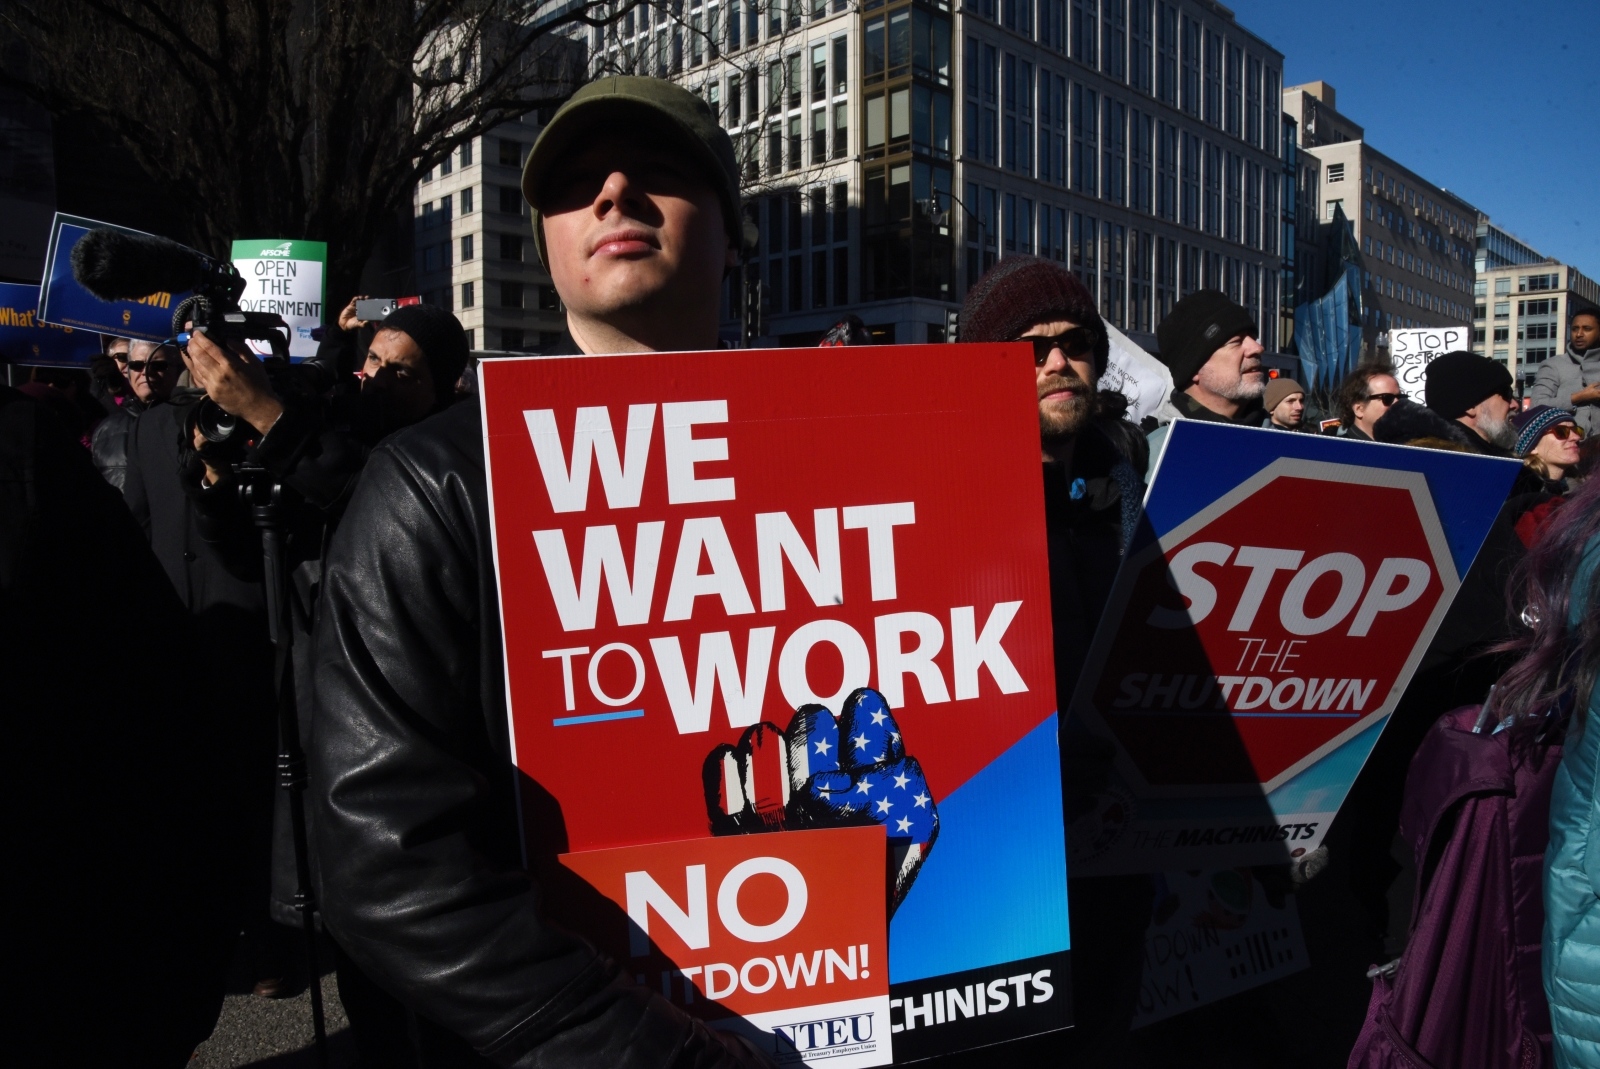 Delavci zveznih služb, protest, ZDA Vir:Pixsell